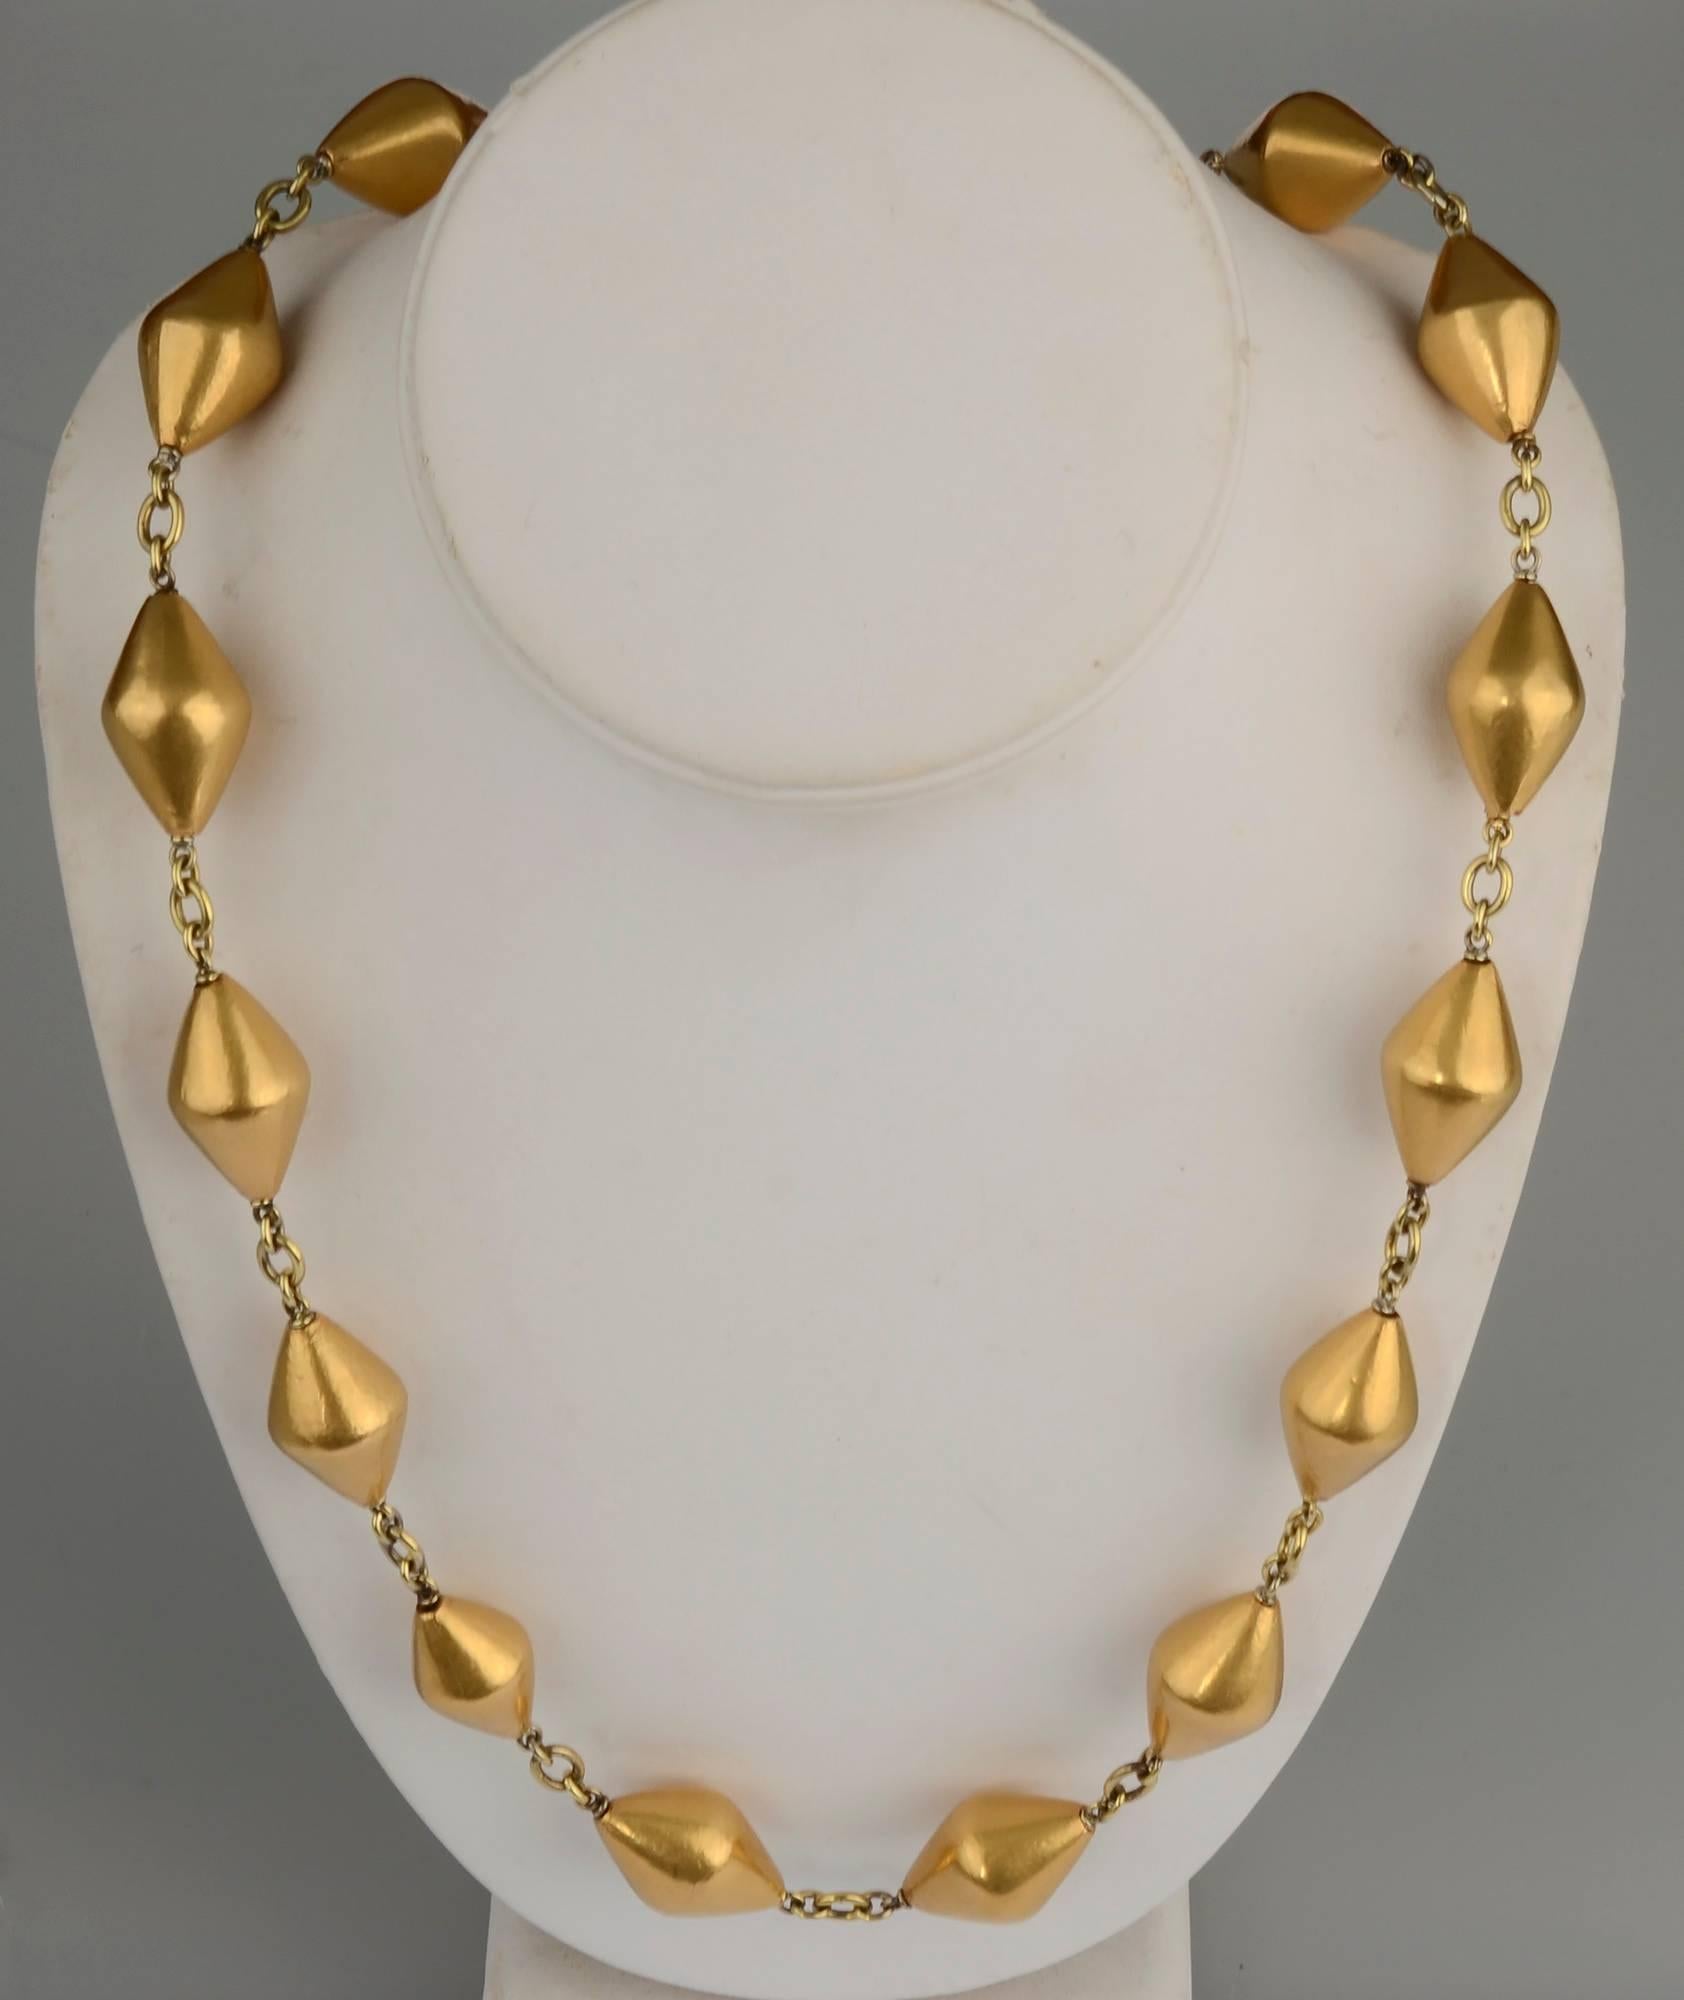 Außergewöhnliche lange Halskette aus 18 Karat Gold von Sylva et Cie. Die 32-Zoll-Halskette besteht aus 20 rhombusförmigen Perlen, die mit runden und ovalen Gliedern verbunden sind. Sie hat einen schönen, detaillierten Verschluss mit floralem Muster. 